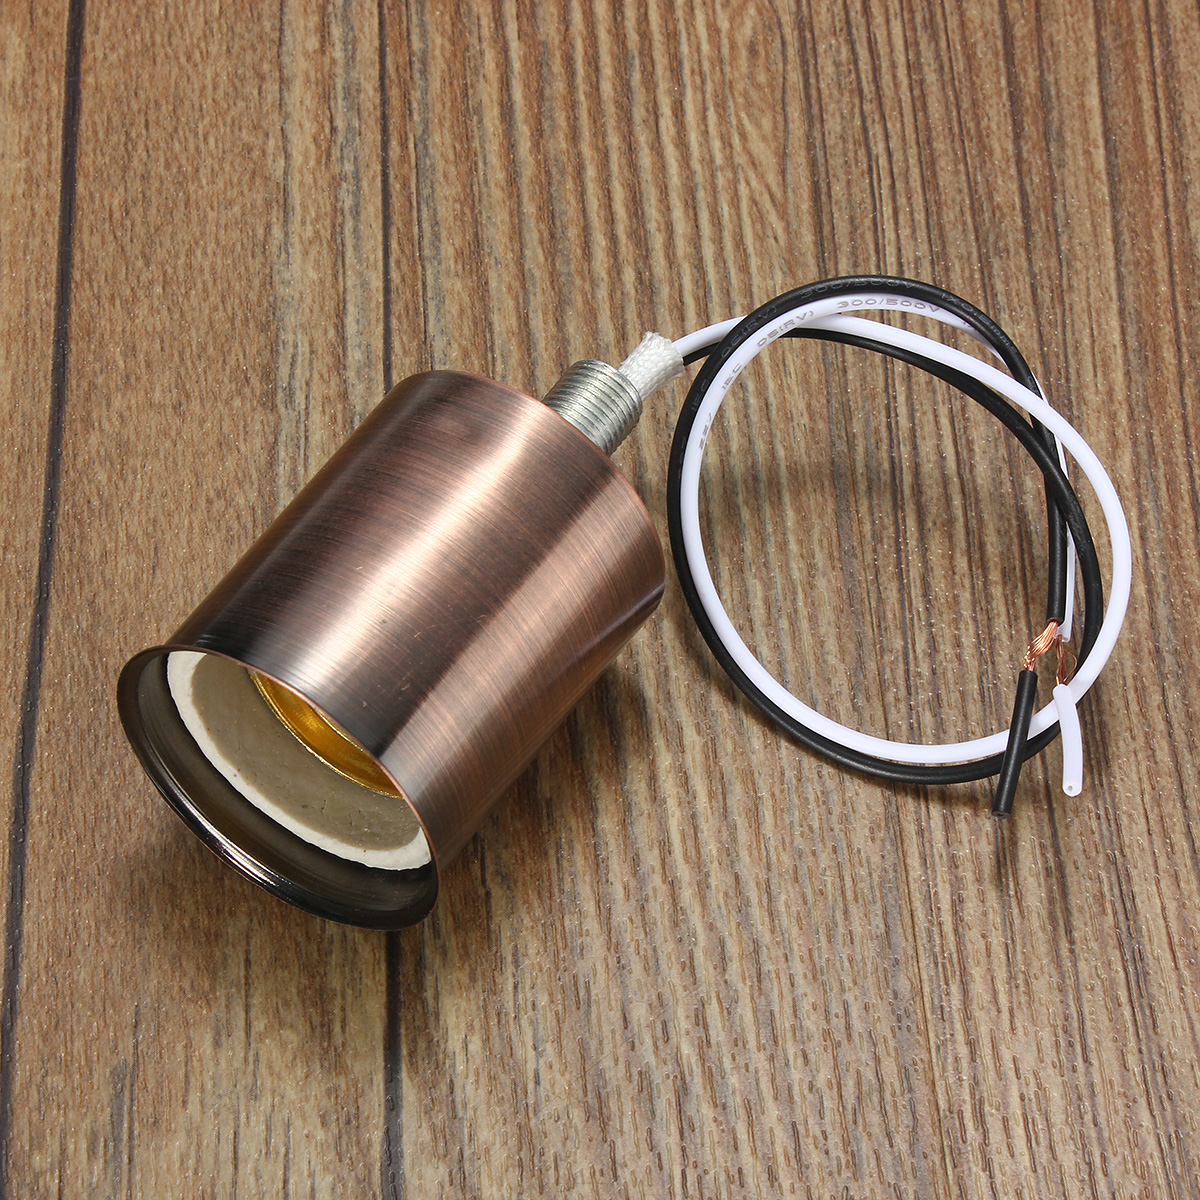 E27-Retro-Vintage-Edison-Ceramic-Screw-Round-Shape-Bulb-Adapter-Hang-Lamp-Holder-Light-Socket-Fittin-1428765-3